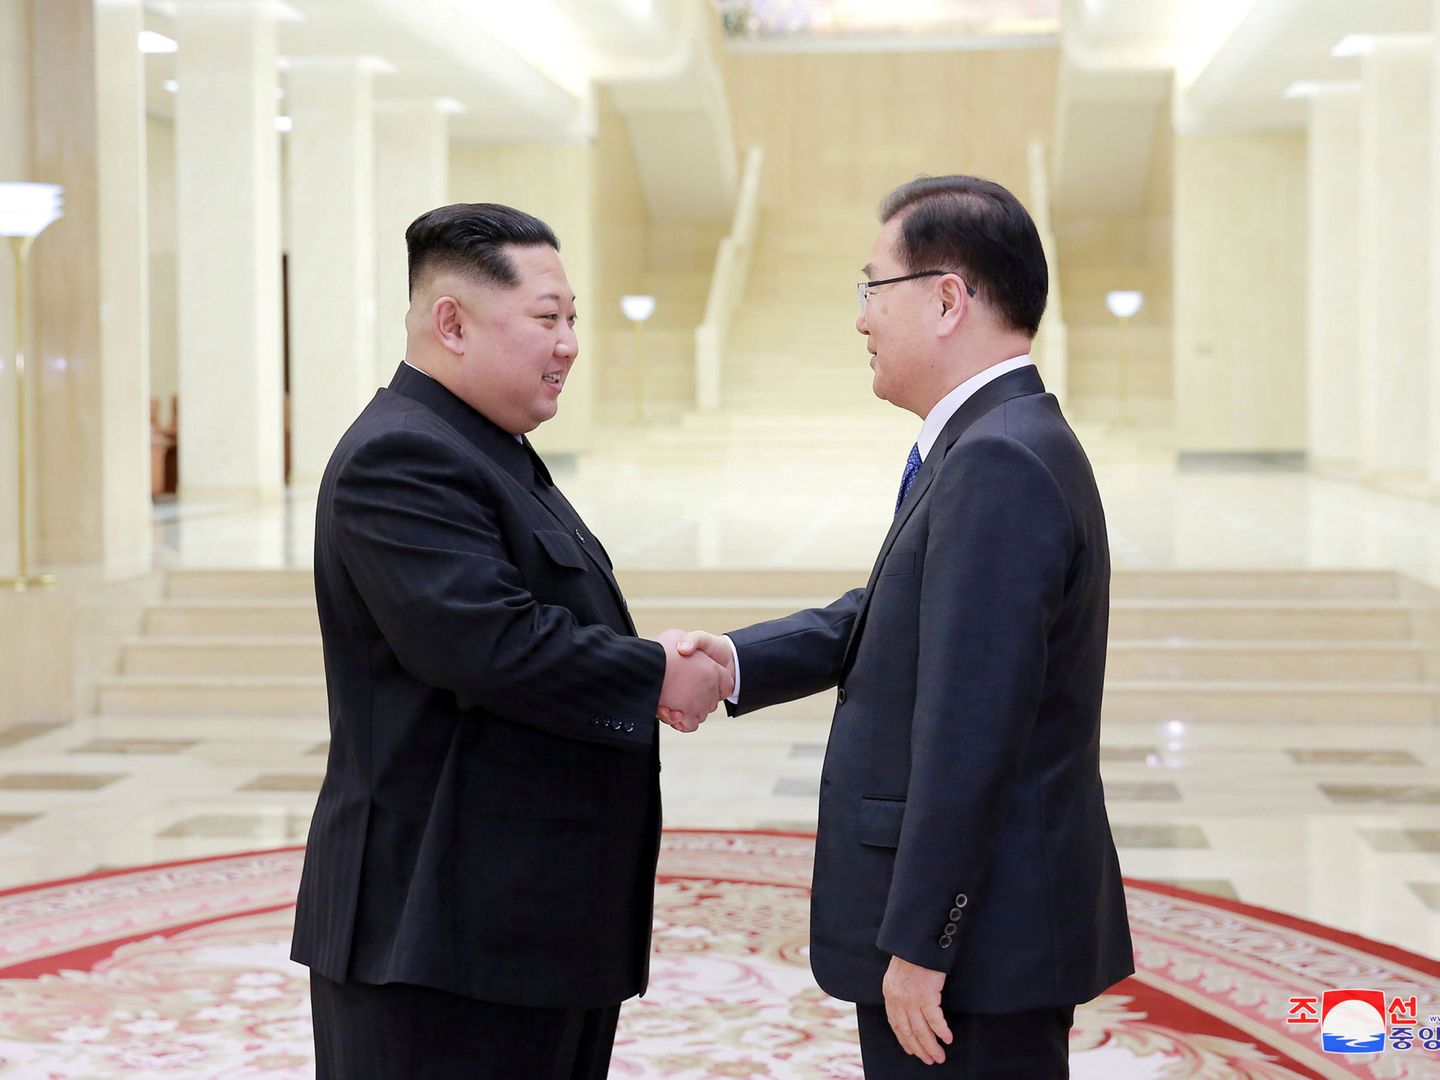 El presidente norcoreano Kim Jong-un estrecha la mano del enviado surcoreano Chung Eui-yong en Pyongyang, el pasado 6 de marzo de 2018. (Reuters)